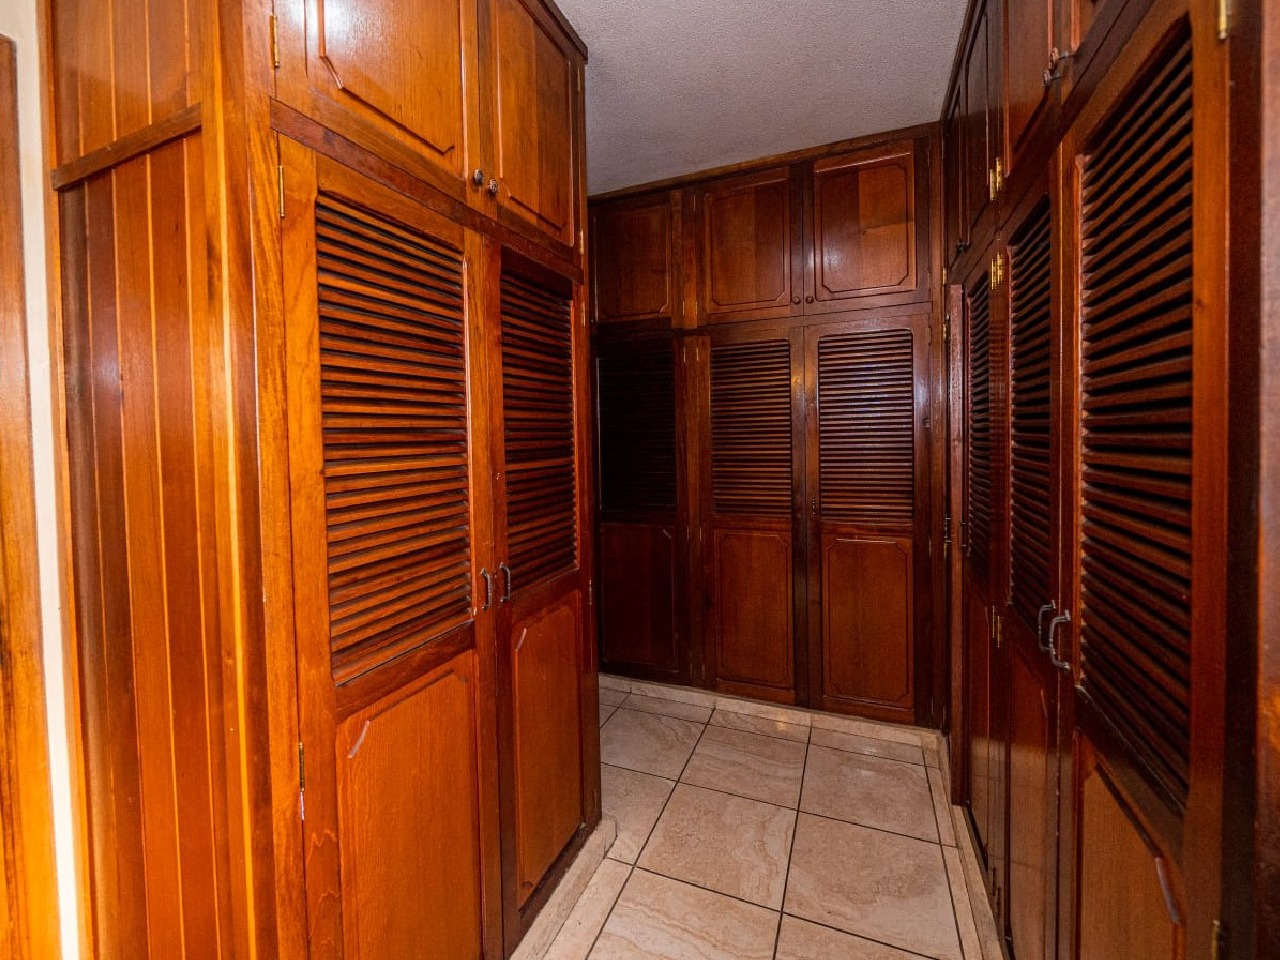 Un walk-in closet amplio de madera color café con varios espacios para acomodar tus pertenecias